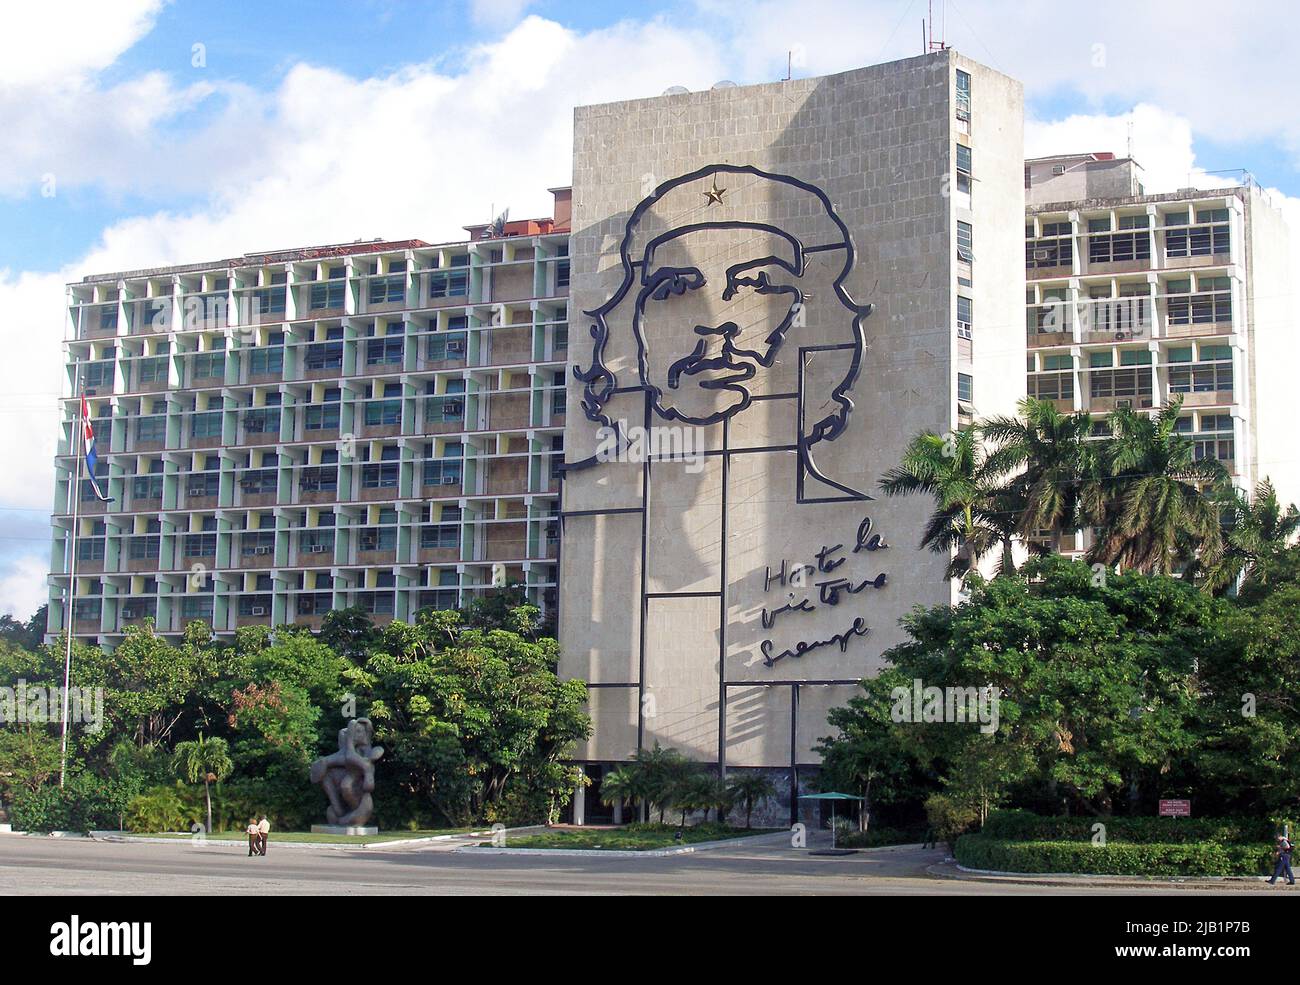 Che Guevara memorial on the facade of the Ministry of the Interior, Plaza de la Revolución, Havana, Cuba, Caribbean Stock Photo